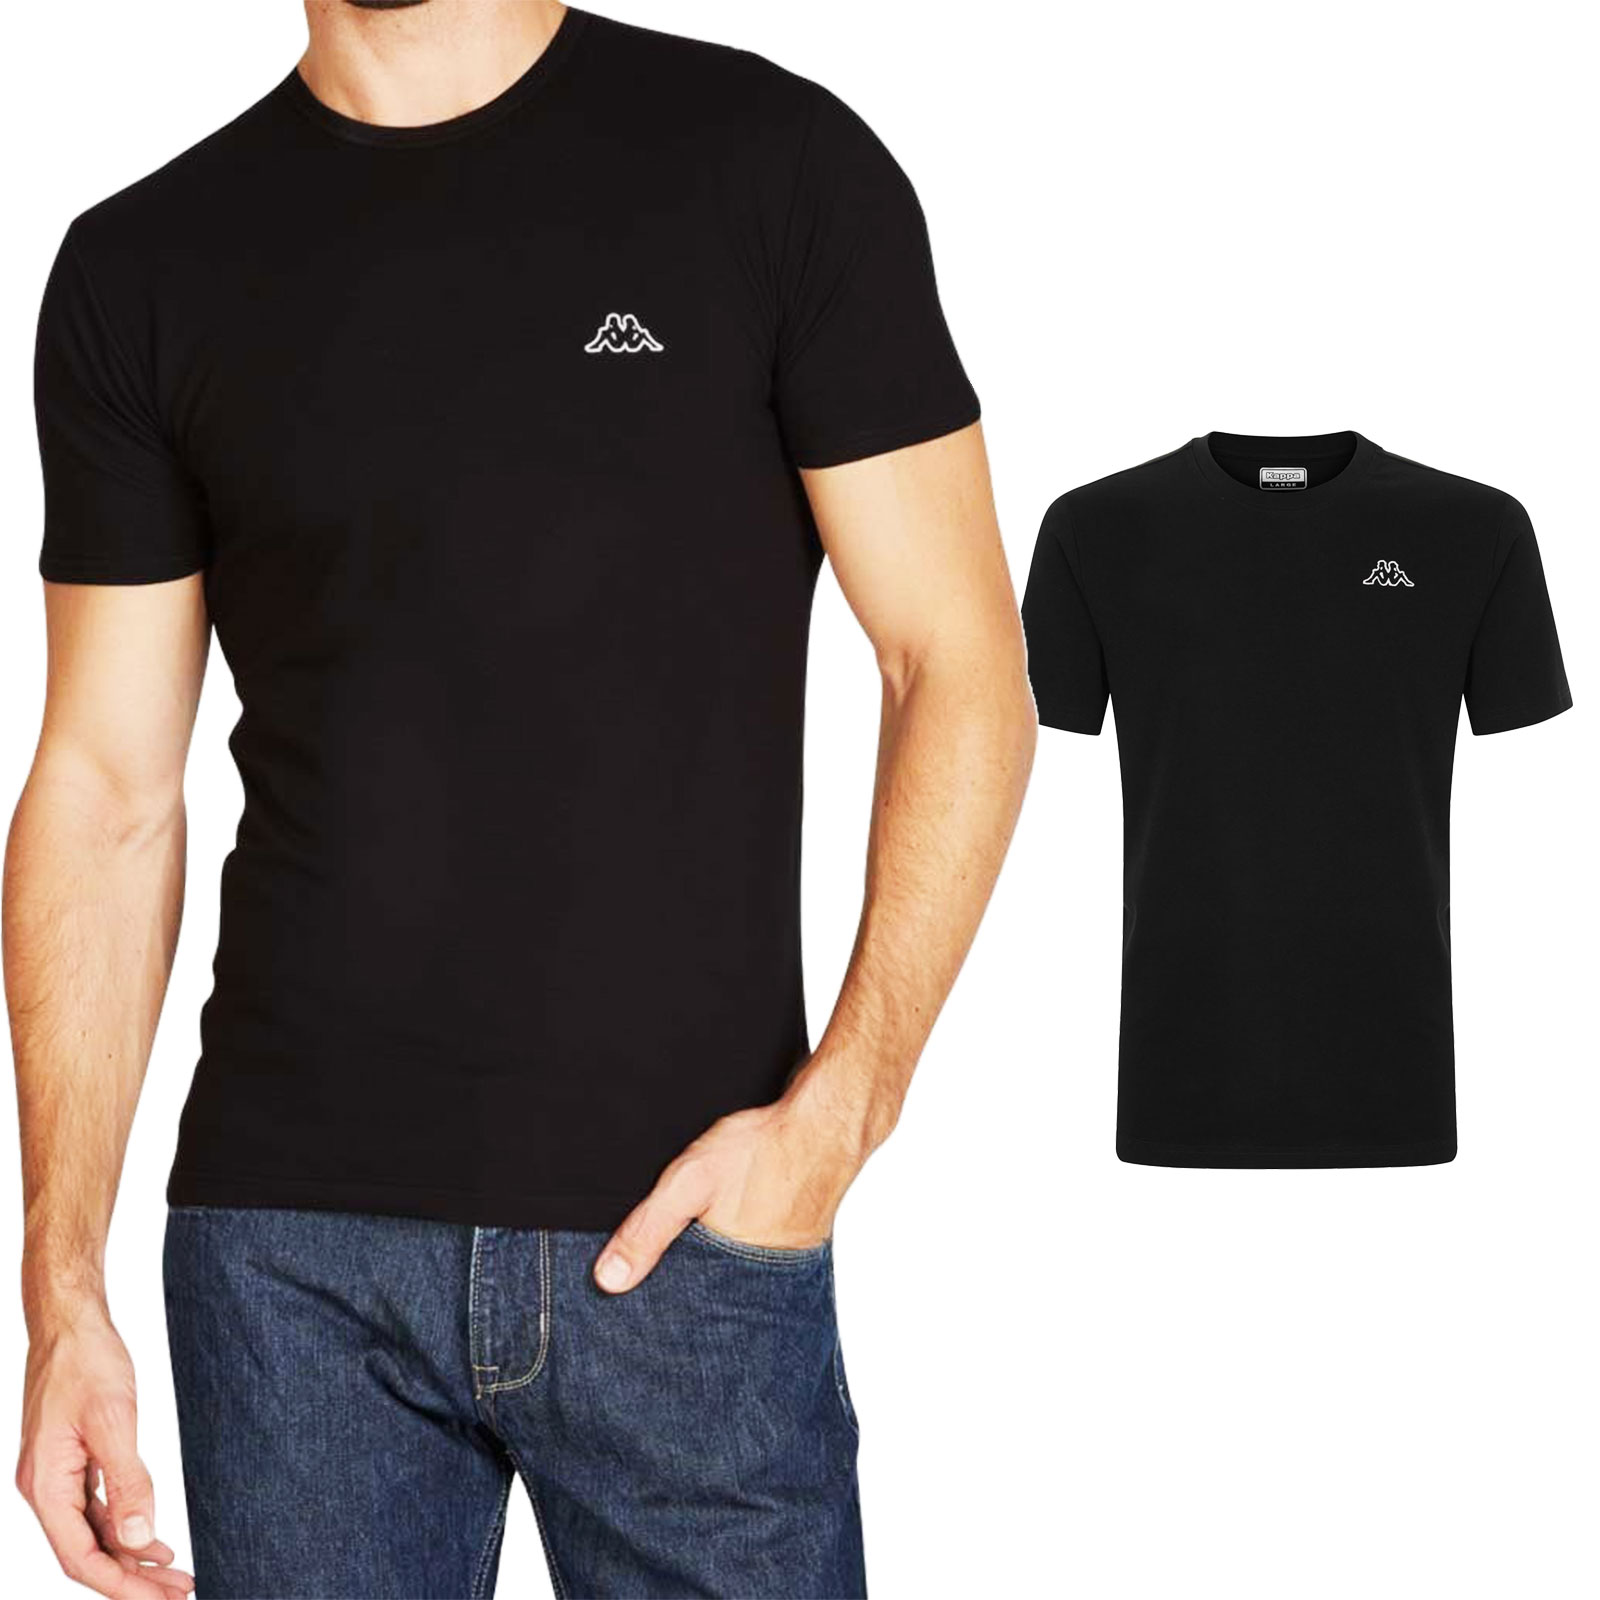 Stock 2 t-shirt uomo Kappa mezza manica maglietta slim fit TOOCOOL | eBay